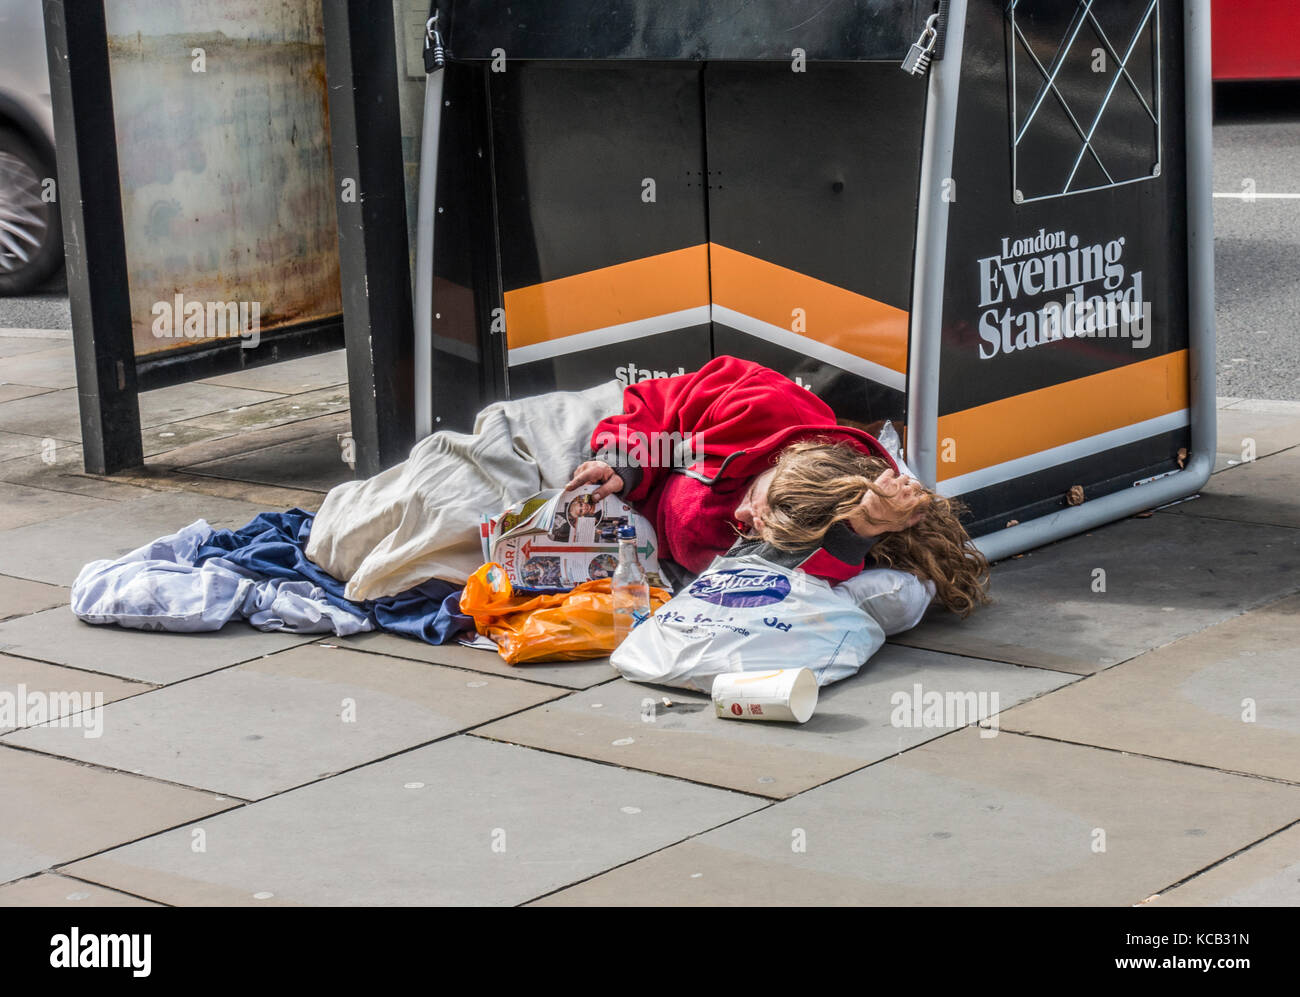 Traversina ruvida / persona senzatetto, leggendo una rivista accanto a un Evening Standard edicola, sdraiato sul pavimento a Londra, Inghilterra, Regno Unito. Foto Stock